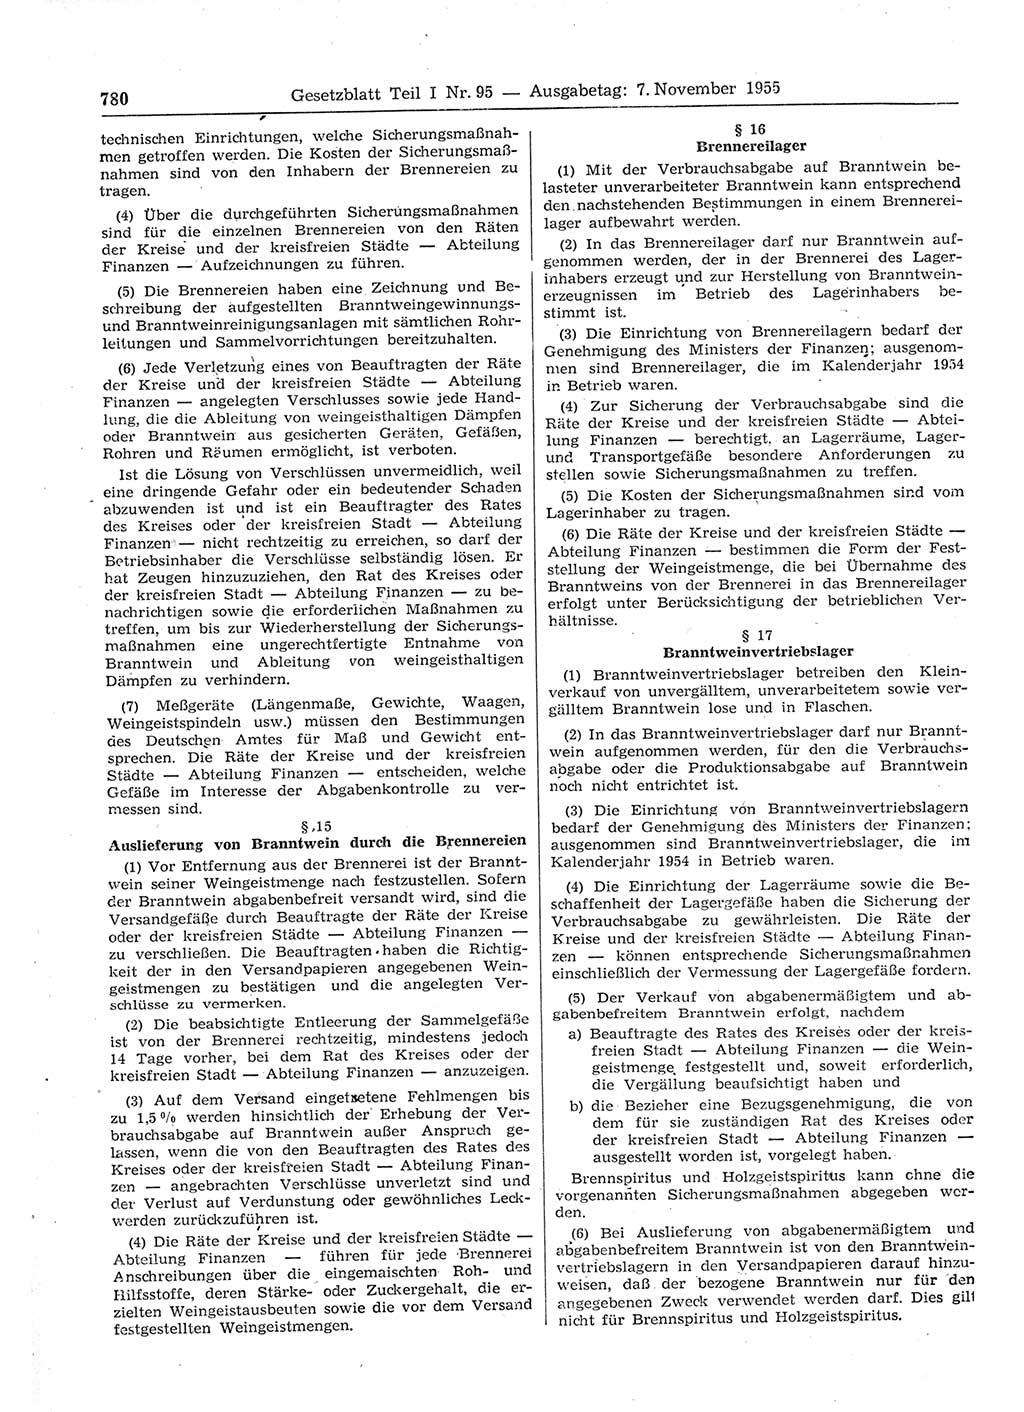 Gesetzblatt (GBl.) der Deutschen Demokratischen Republik (DDR) Teil Ⅰ 1955, Seite 780 (GBl. DDR Ⅰ 1955, S. 780)